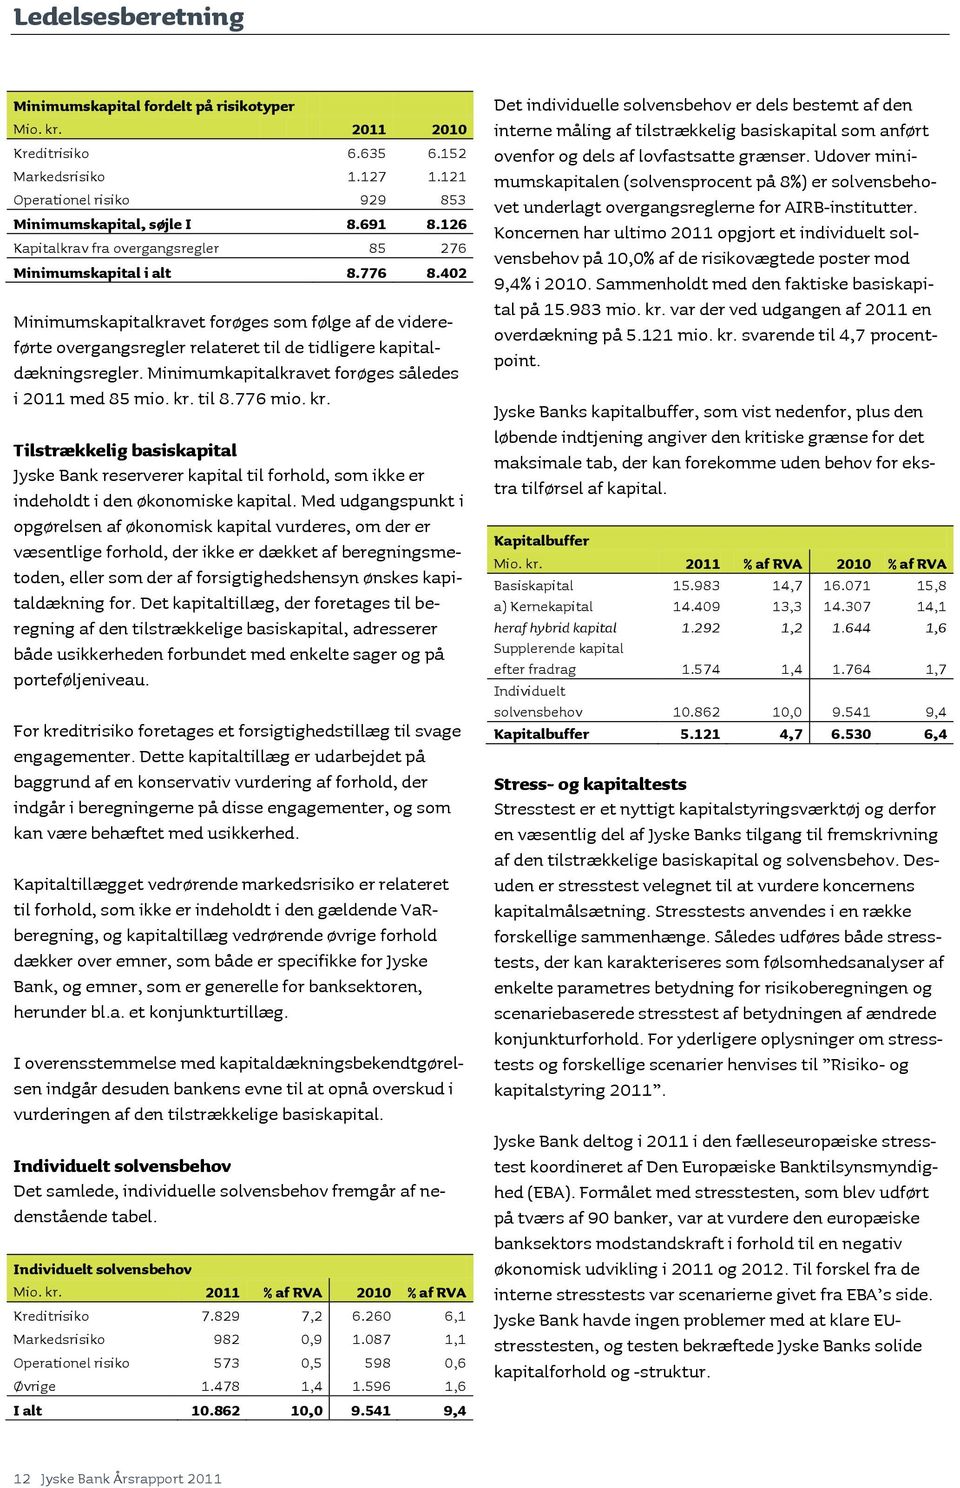 Minimumkapitalkravet forøges således i 2011 med 85 mio. kr. til 8.776 mio. kr. Tilstrækkelig basiskapital Jyske Bank reserverer kapital til forhold, som ikke er indeholdt i den økonomiske kapital.